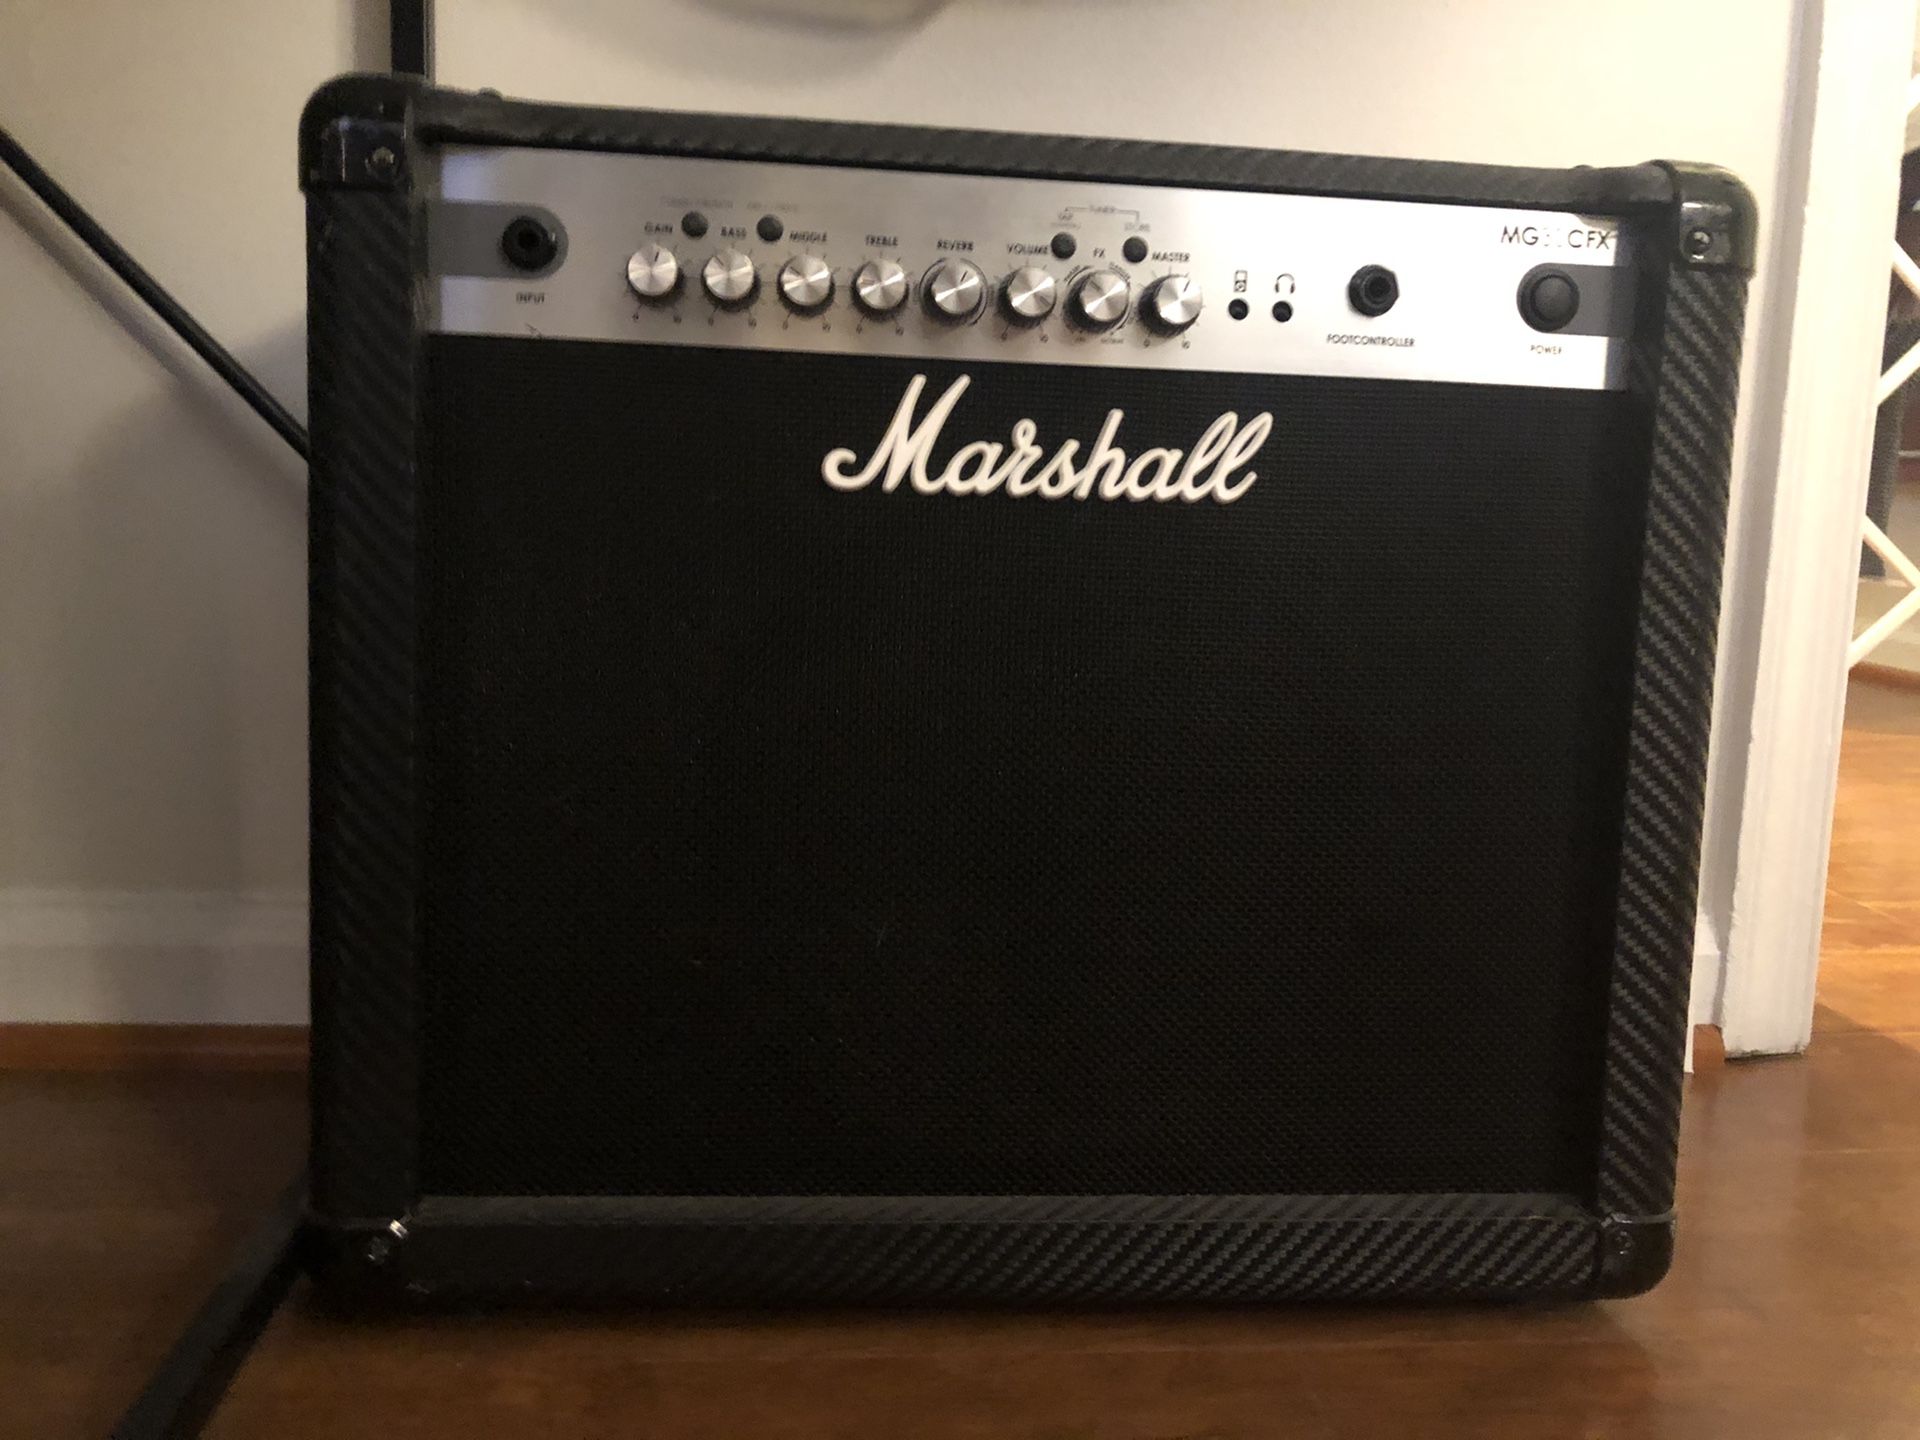 Marshall MG30CFX Guitar Amp